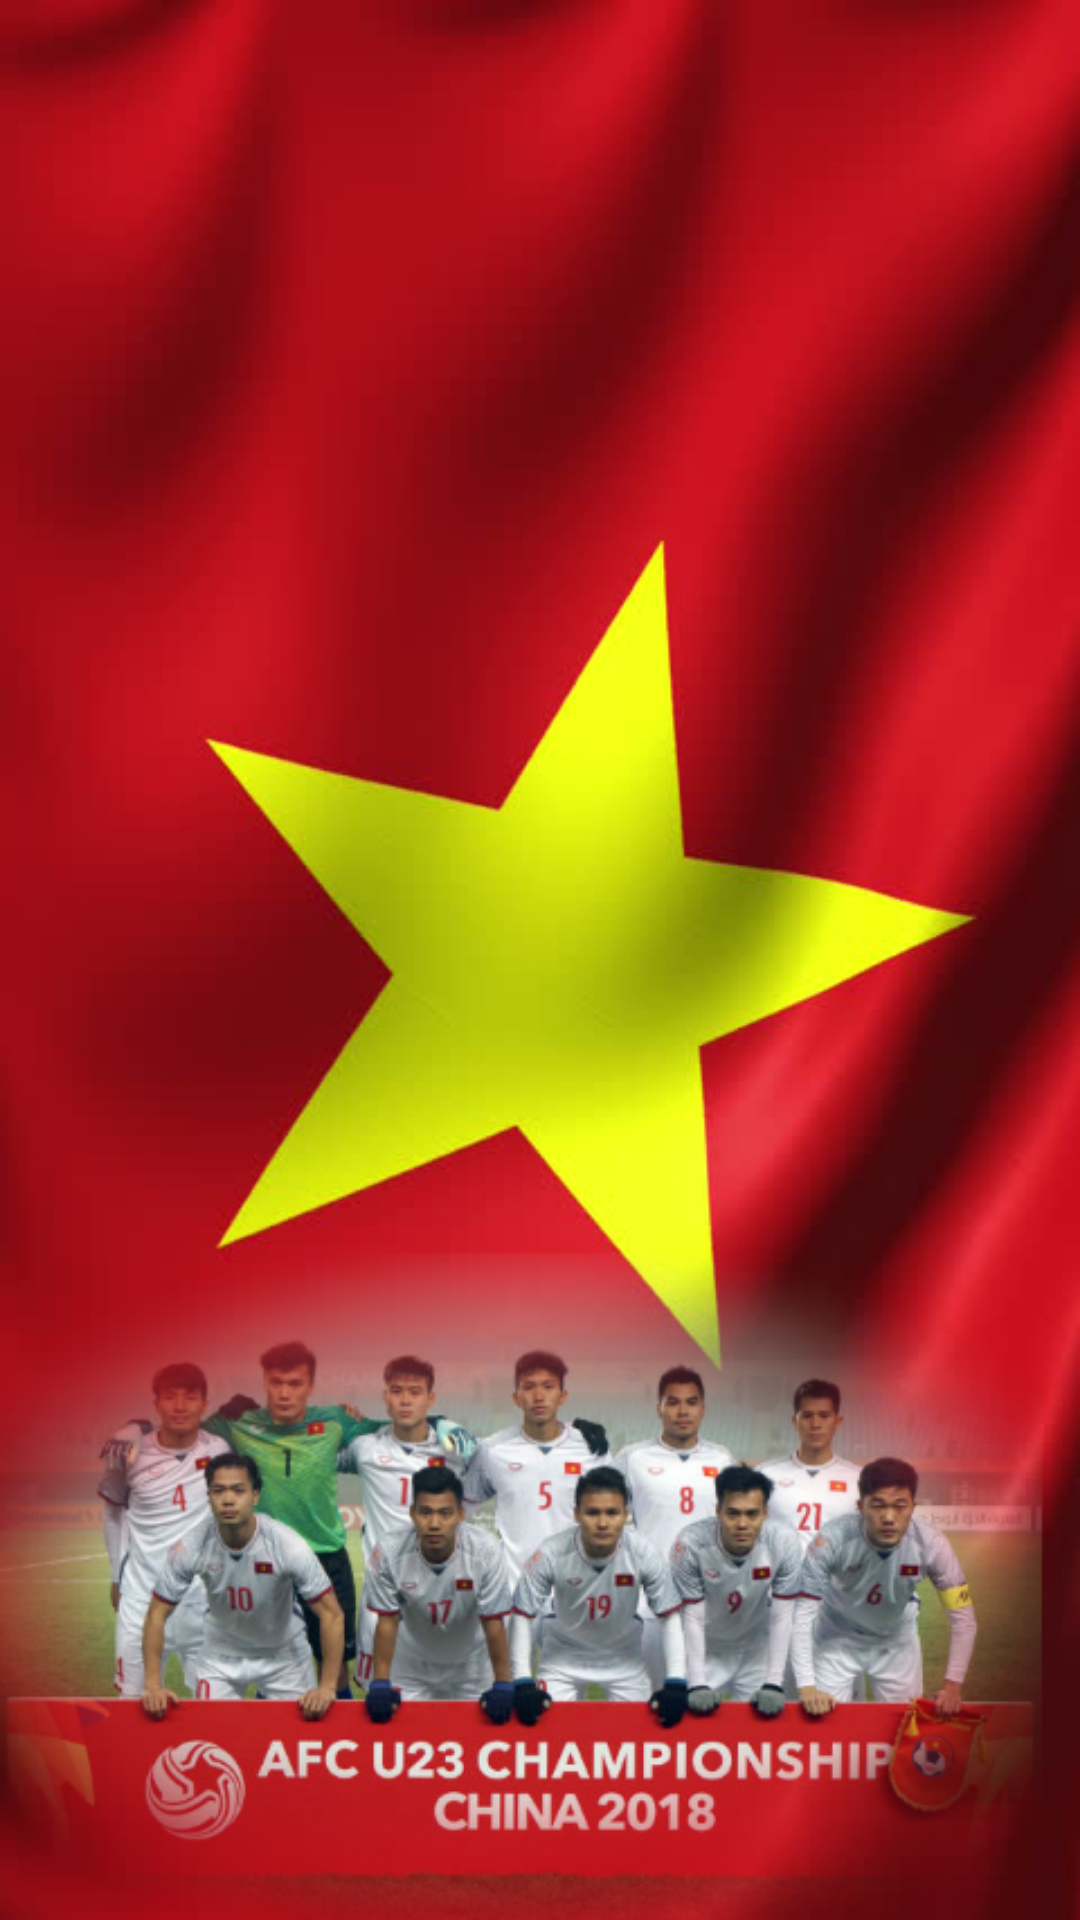 Tải Bộ Hình Nền U23 Việt Nam Về Điện Thoại